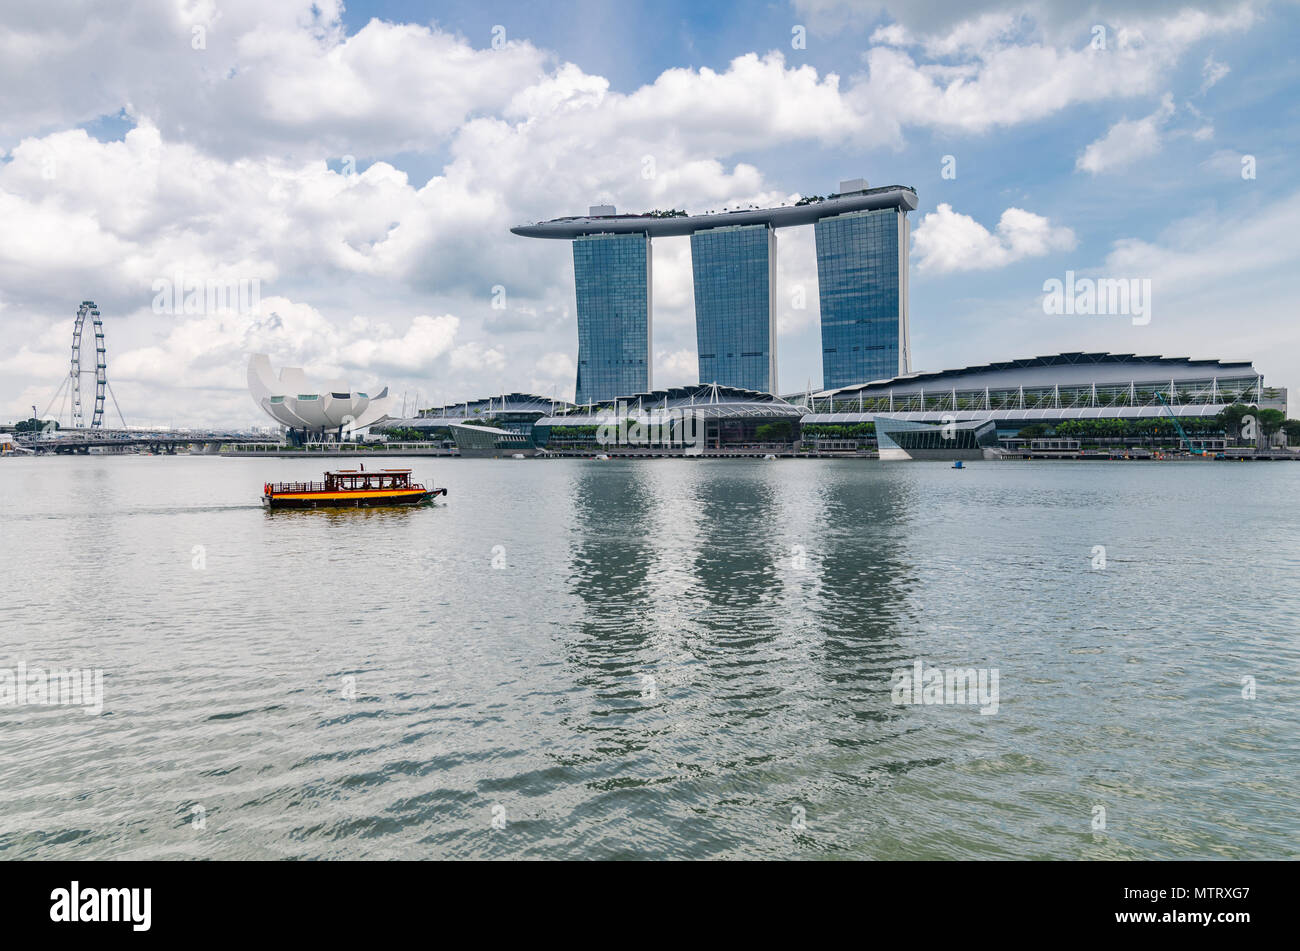 Un bateau de croisière connu comme twakows ride passer la célèbre Marina Bay Sands Hotel. Le bateau ont été utilisés à des fins de transport le long de la rivière Singapour. Banque D'Images